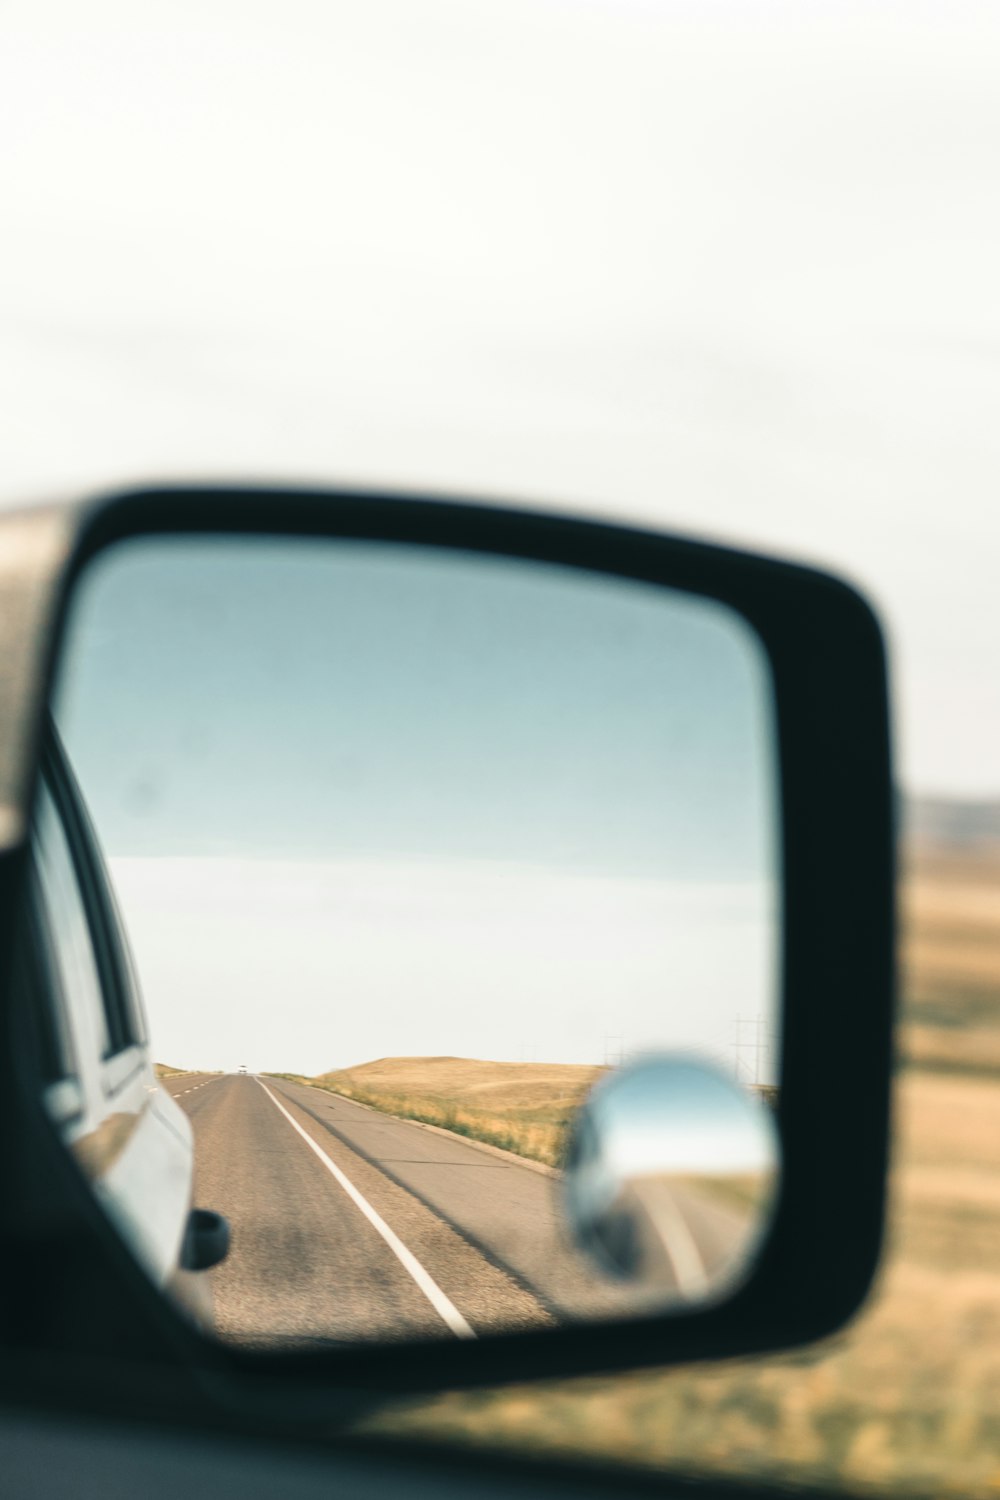 El espejo retrovisor lateral de un automóvil que refleja una carretera